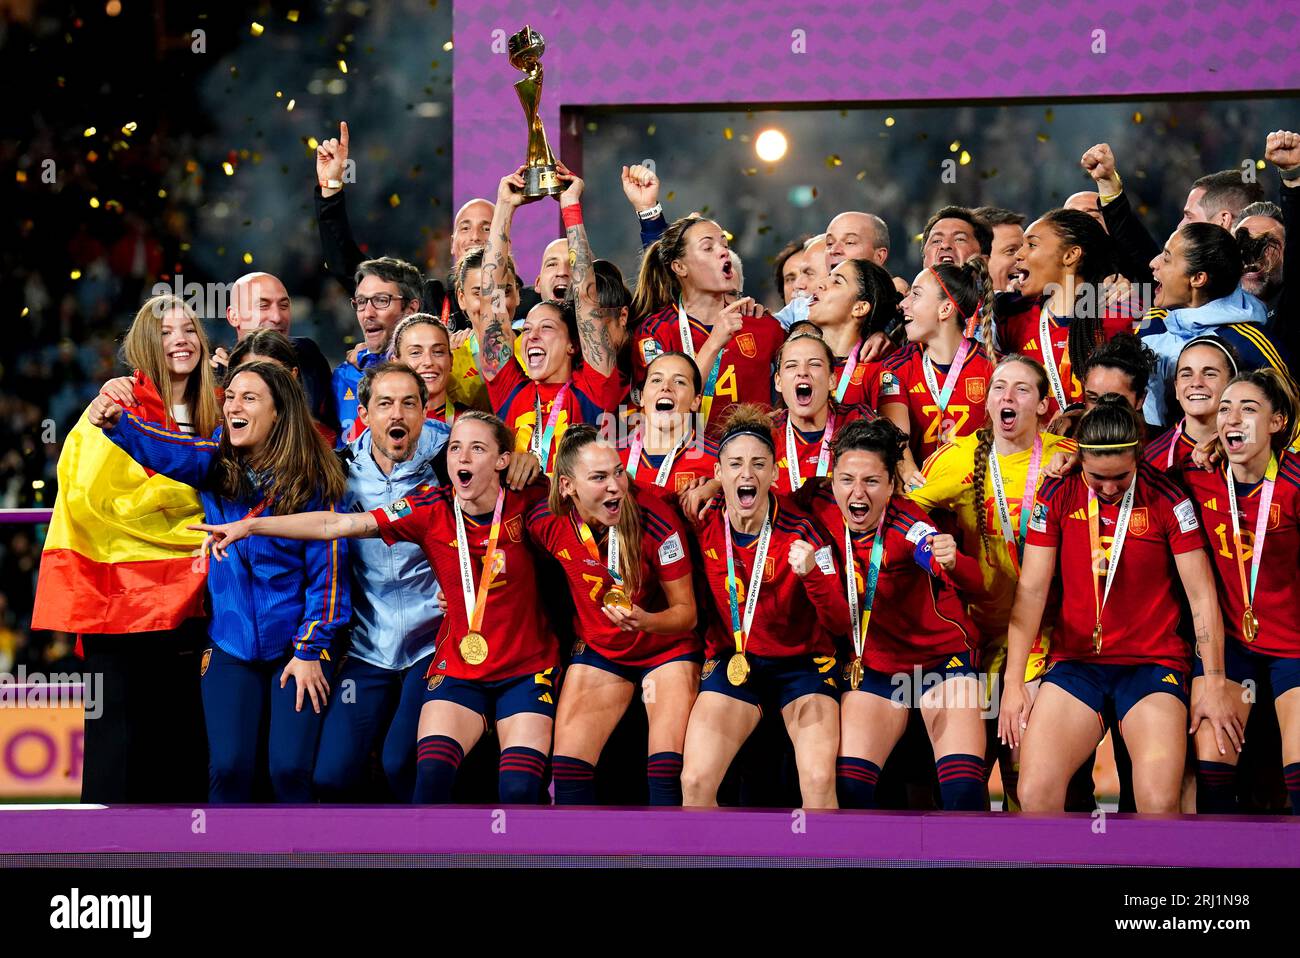 Die spanischen Spieler feiern, nachdem sie das Endspiel der FIFA Frauen-Weltmeisterschaft im Stadion Australien, Sydney, gewonnen haben. Bilddatum: Sonntag, 20. August 2023. Stockfoto